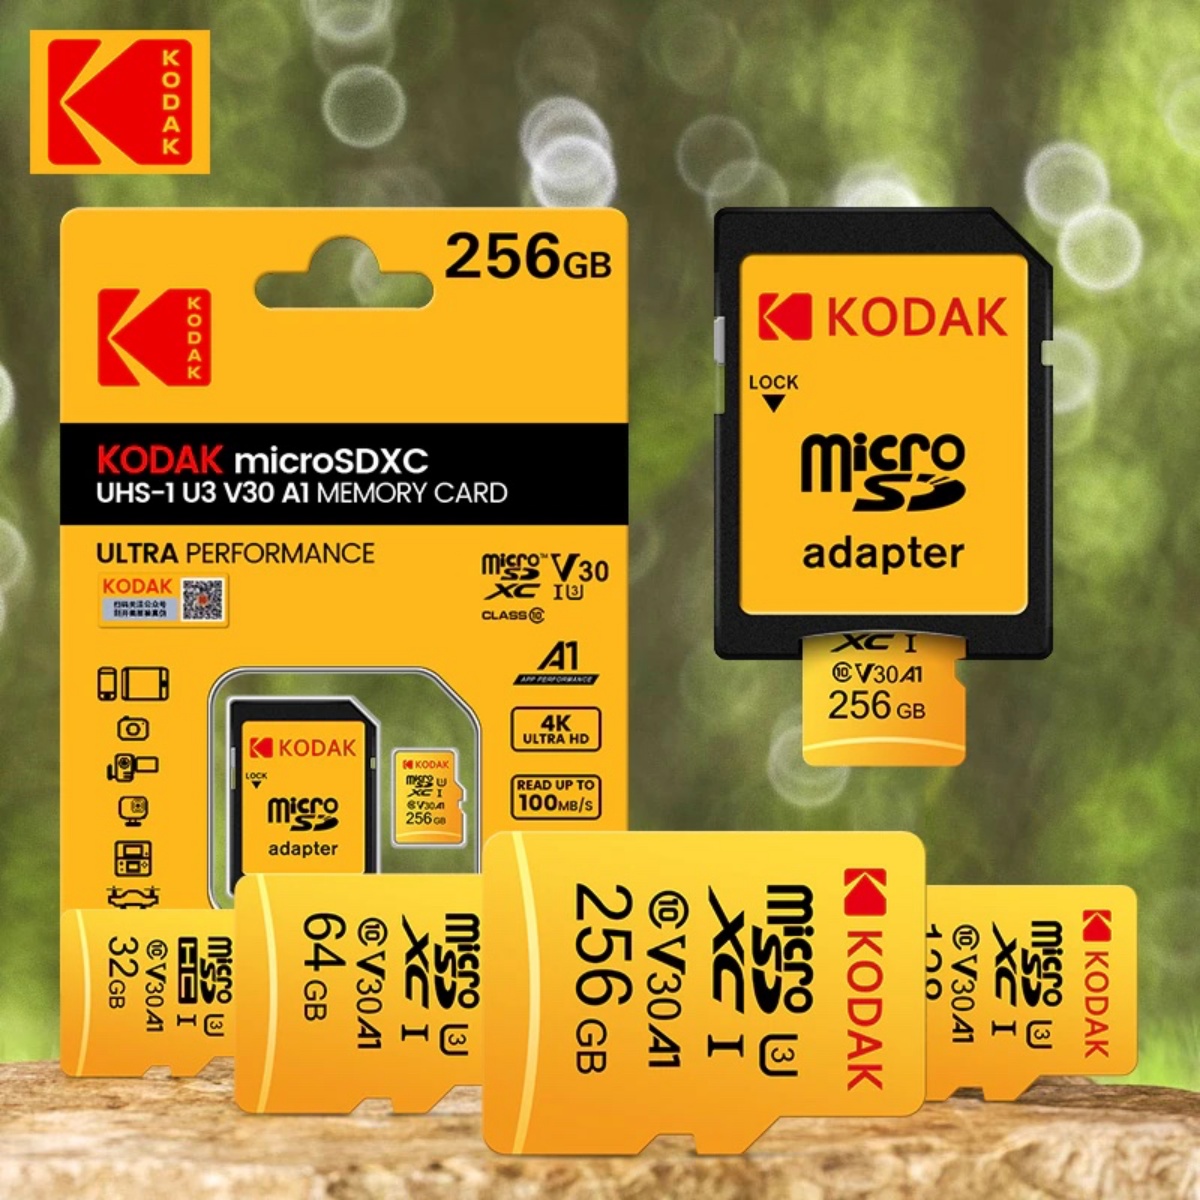 Kodak PIXPRO AZ405 Digital Camera (Black) + 64GB Memory Card + Camera Case